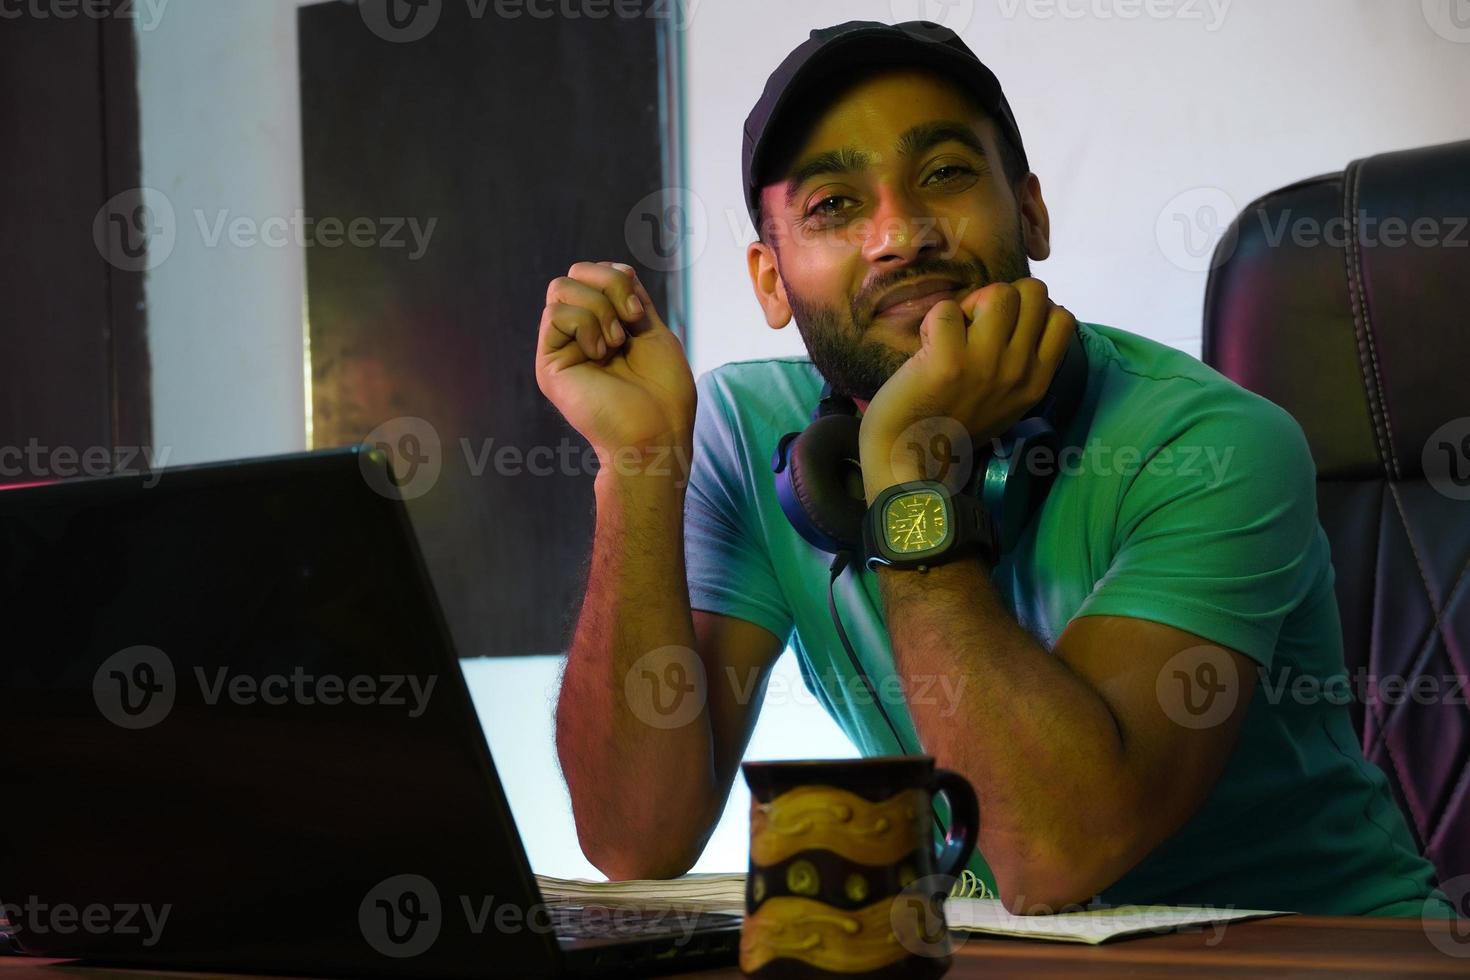 cara indiano sorridente com computador portátil trabalhando ou estudando online foto